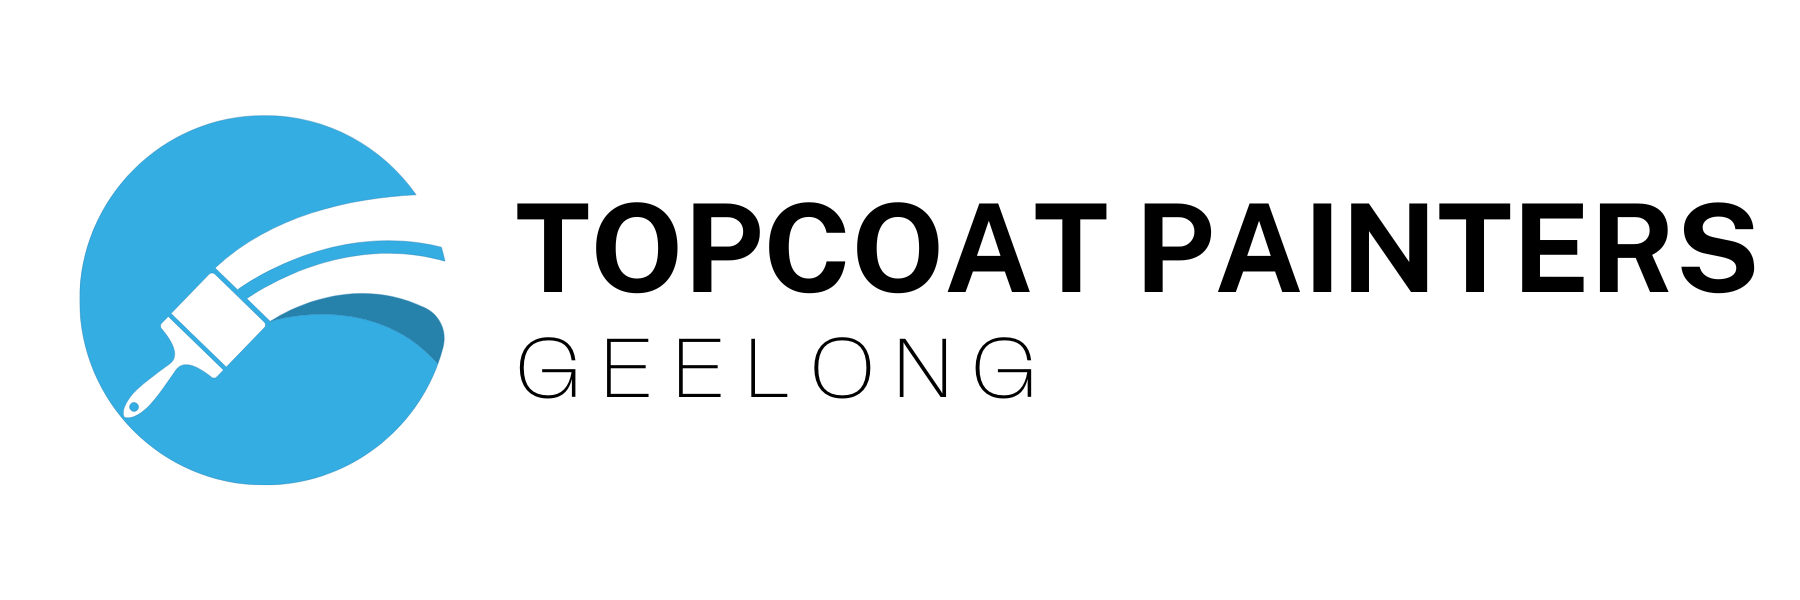 Top Coat Painters Geelong